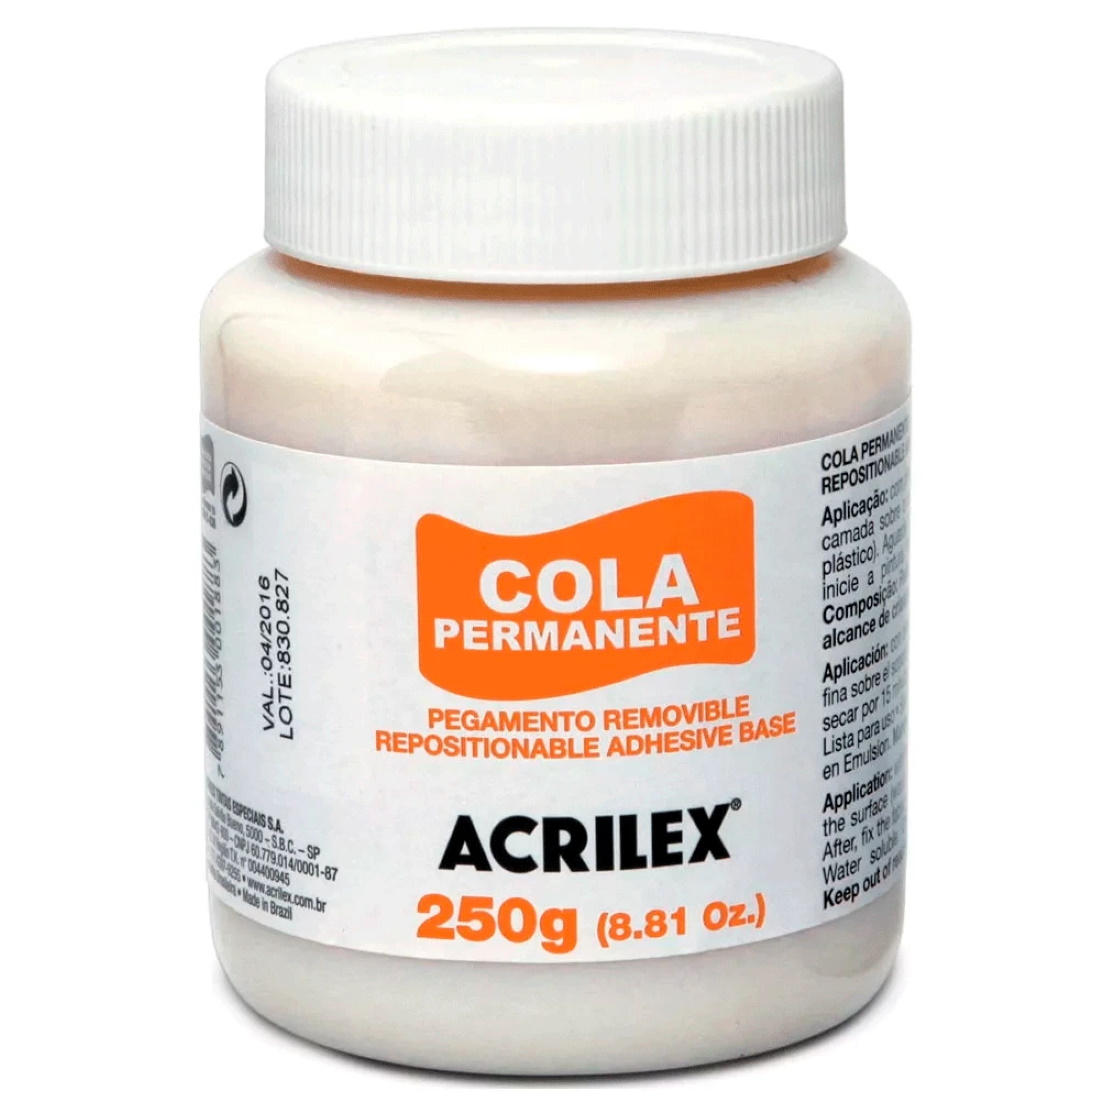 Cola Permanente Acrilex